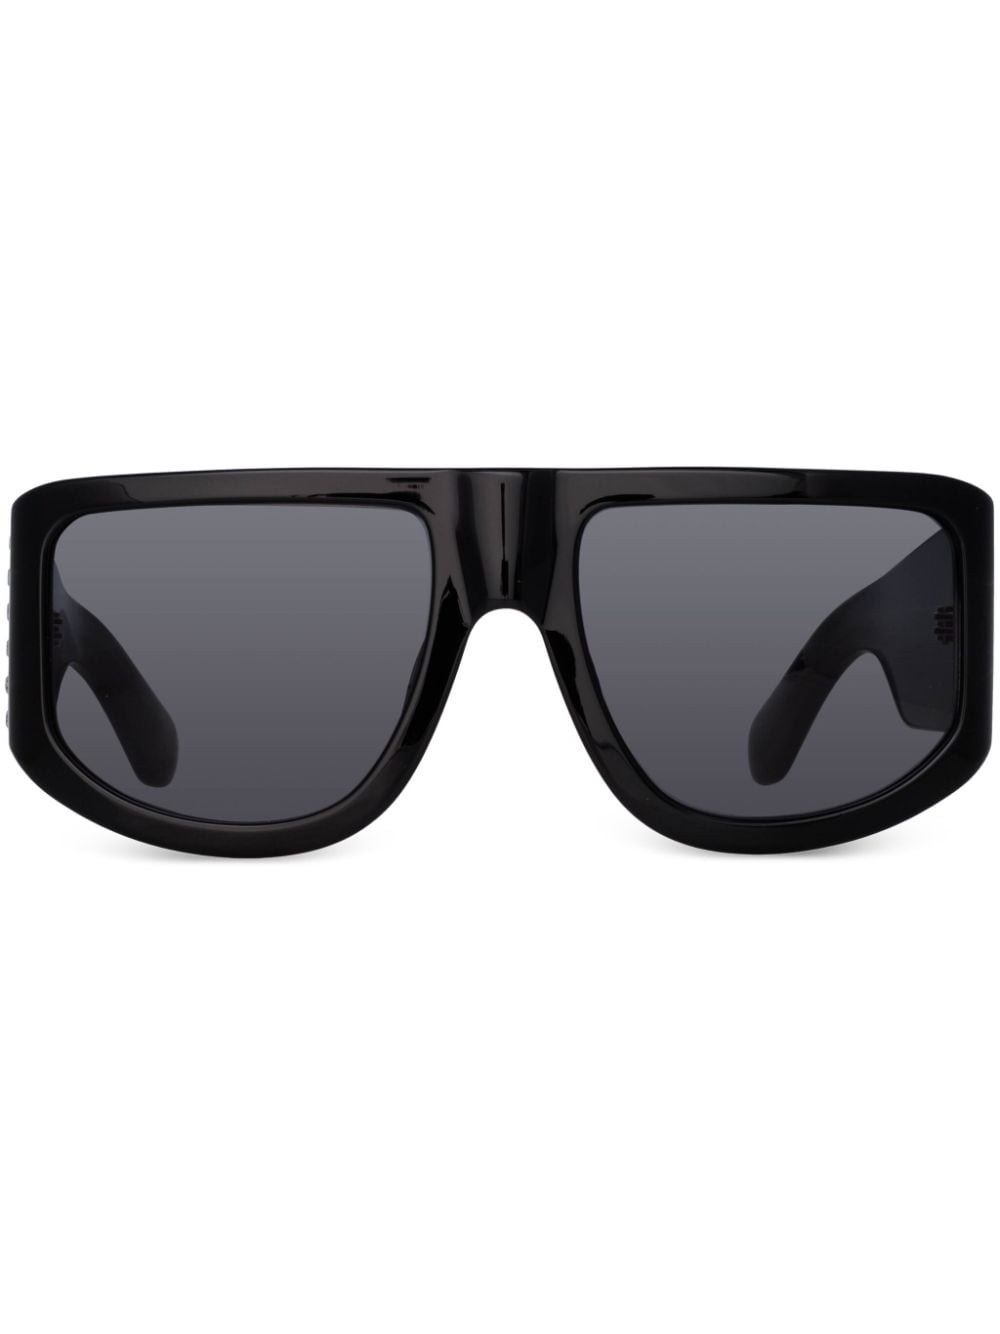 Nué oversize-frame sunglasses